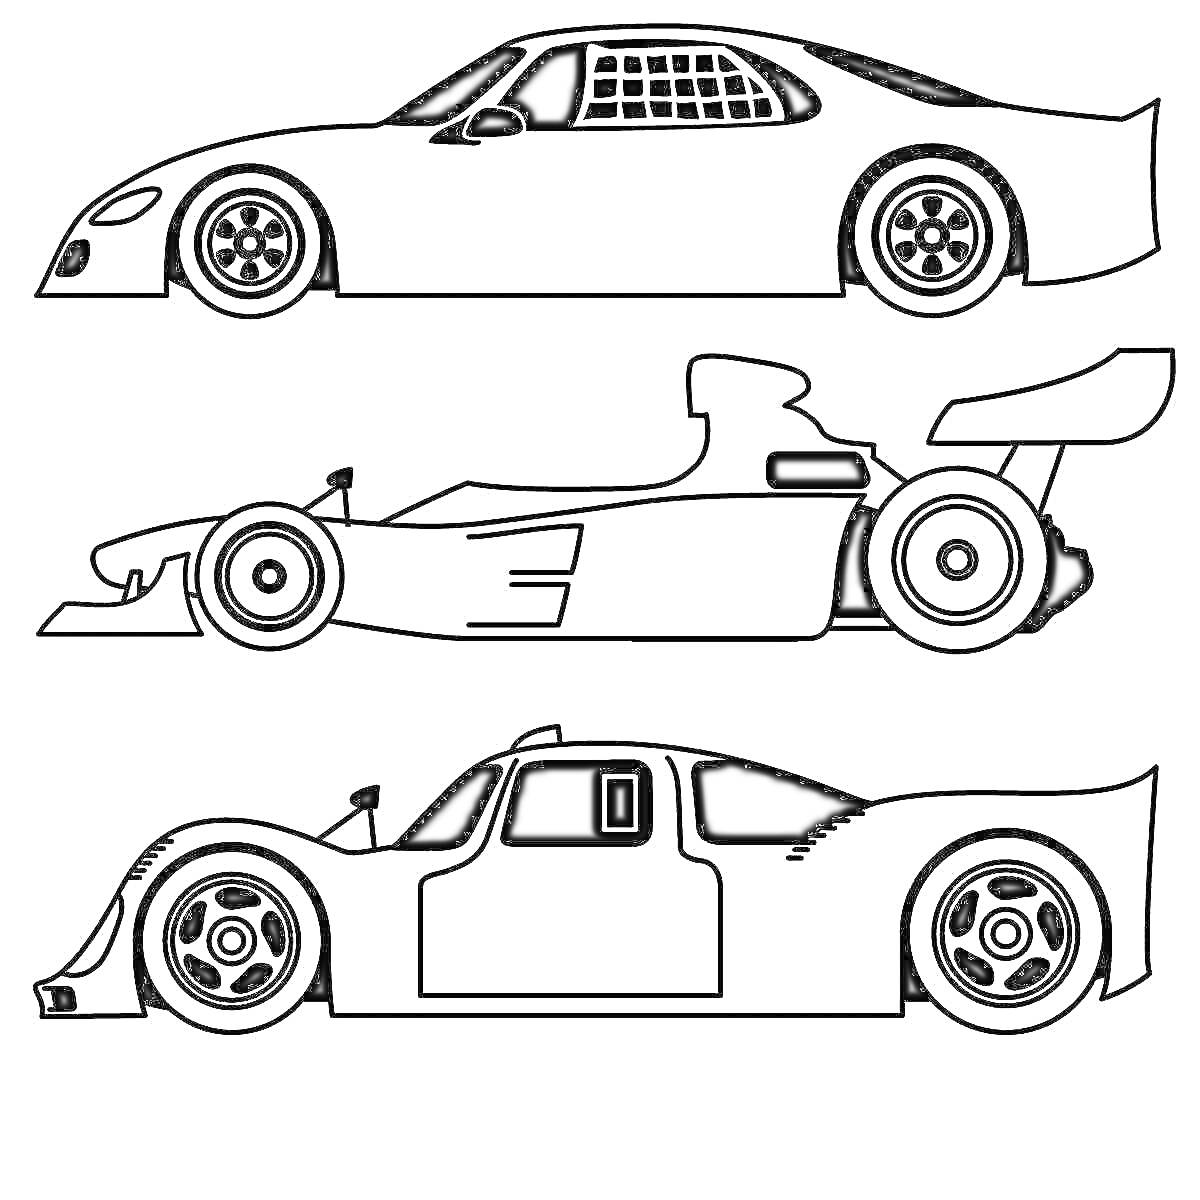 Три гоночных автомобиля (гладкий гоночный автомобиль, автомобиль Формулы-1, спортивный автомобиль с дверьми)